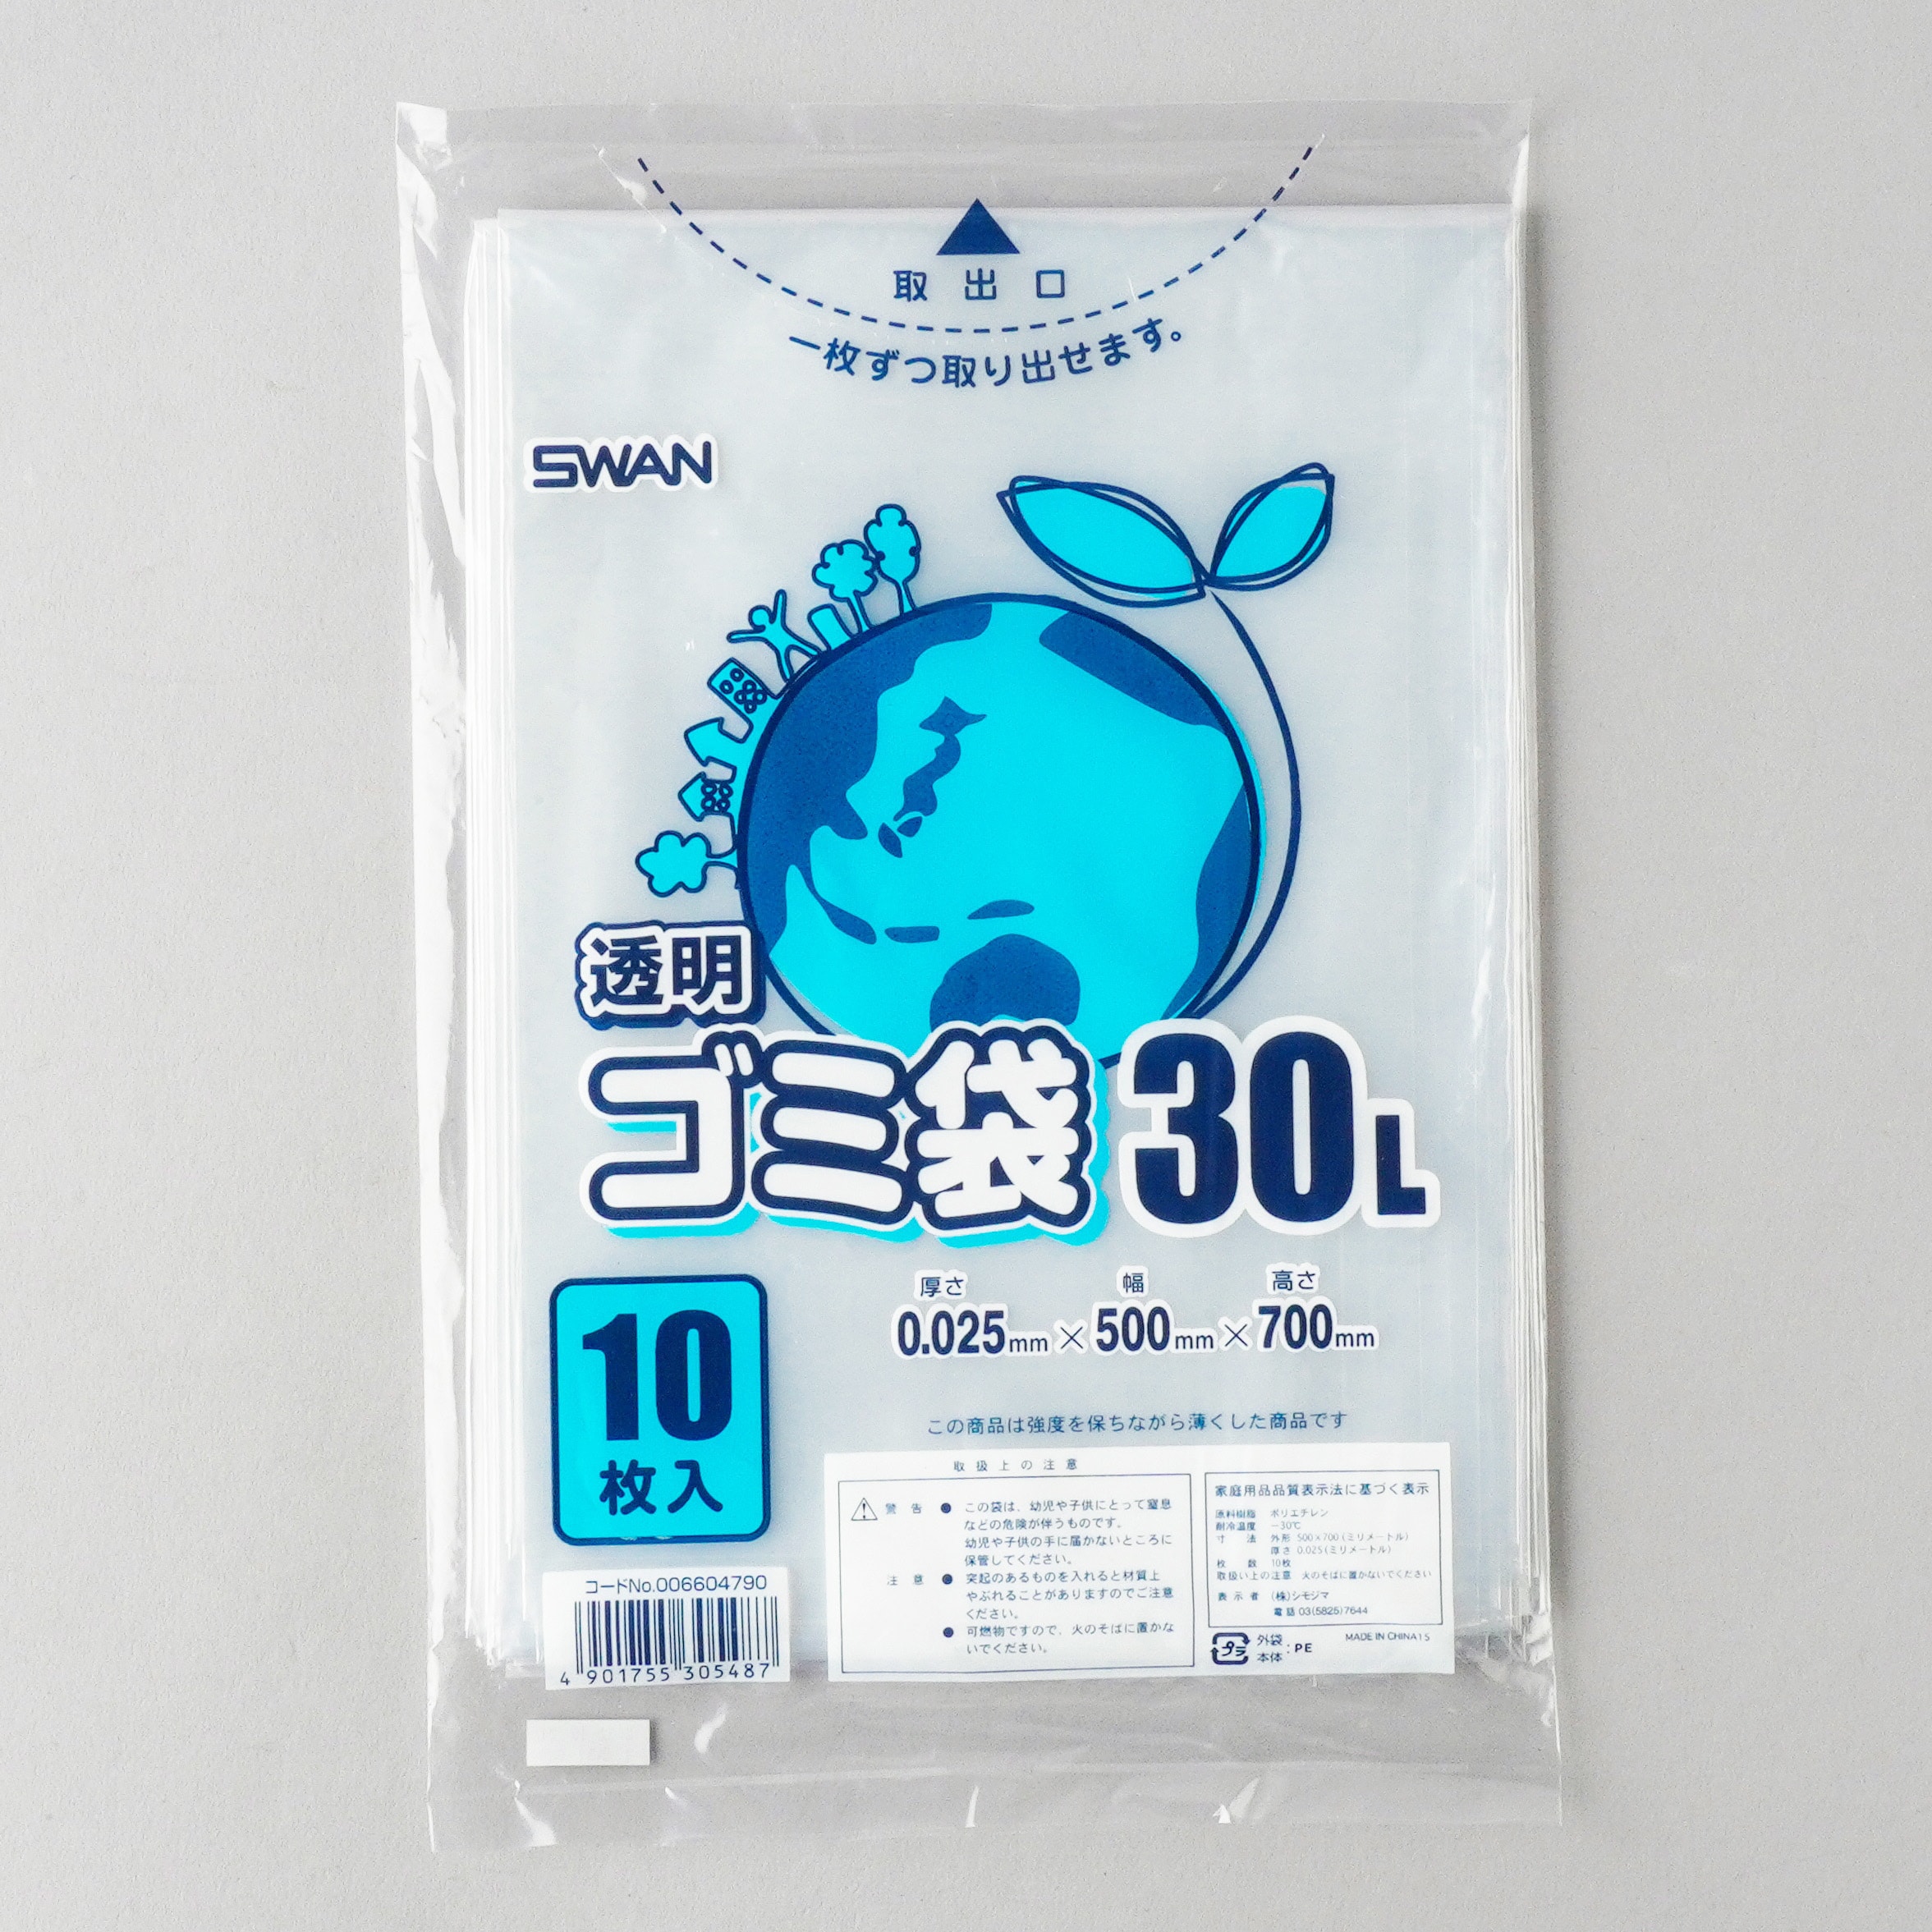 日本技研工業 GB-C91 コンパクト 強い半透明 90L 10P ビニール袋